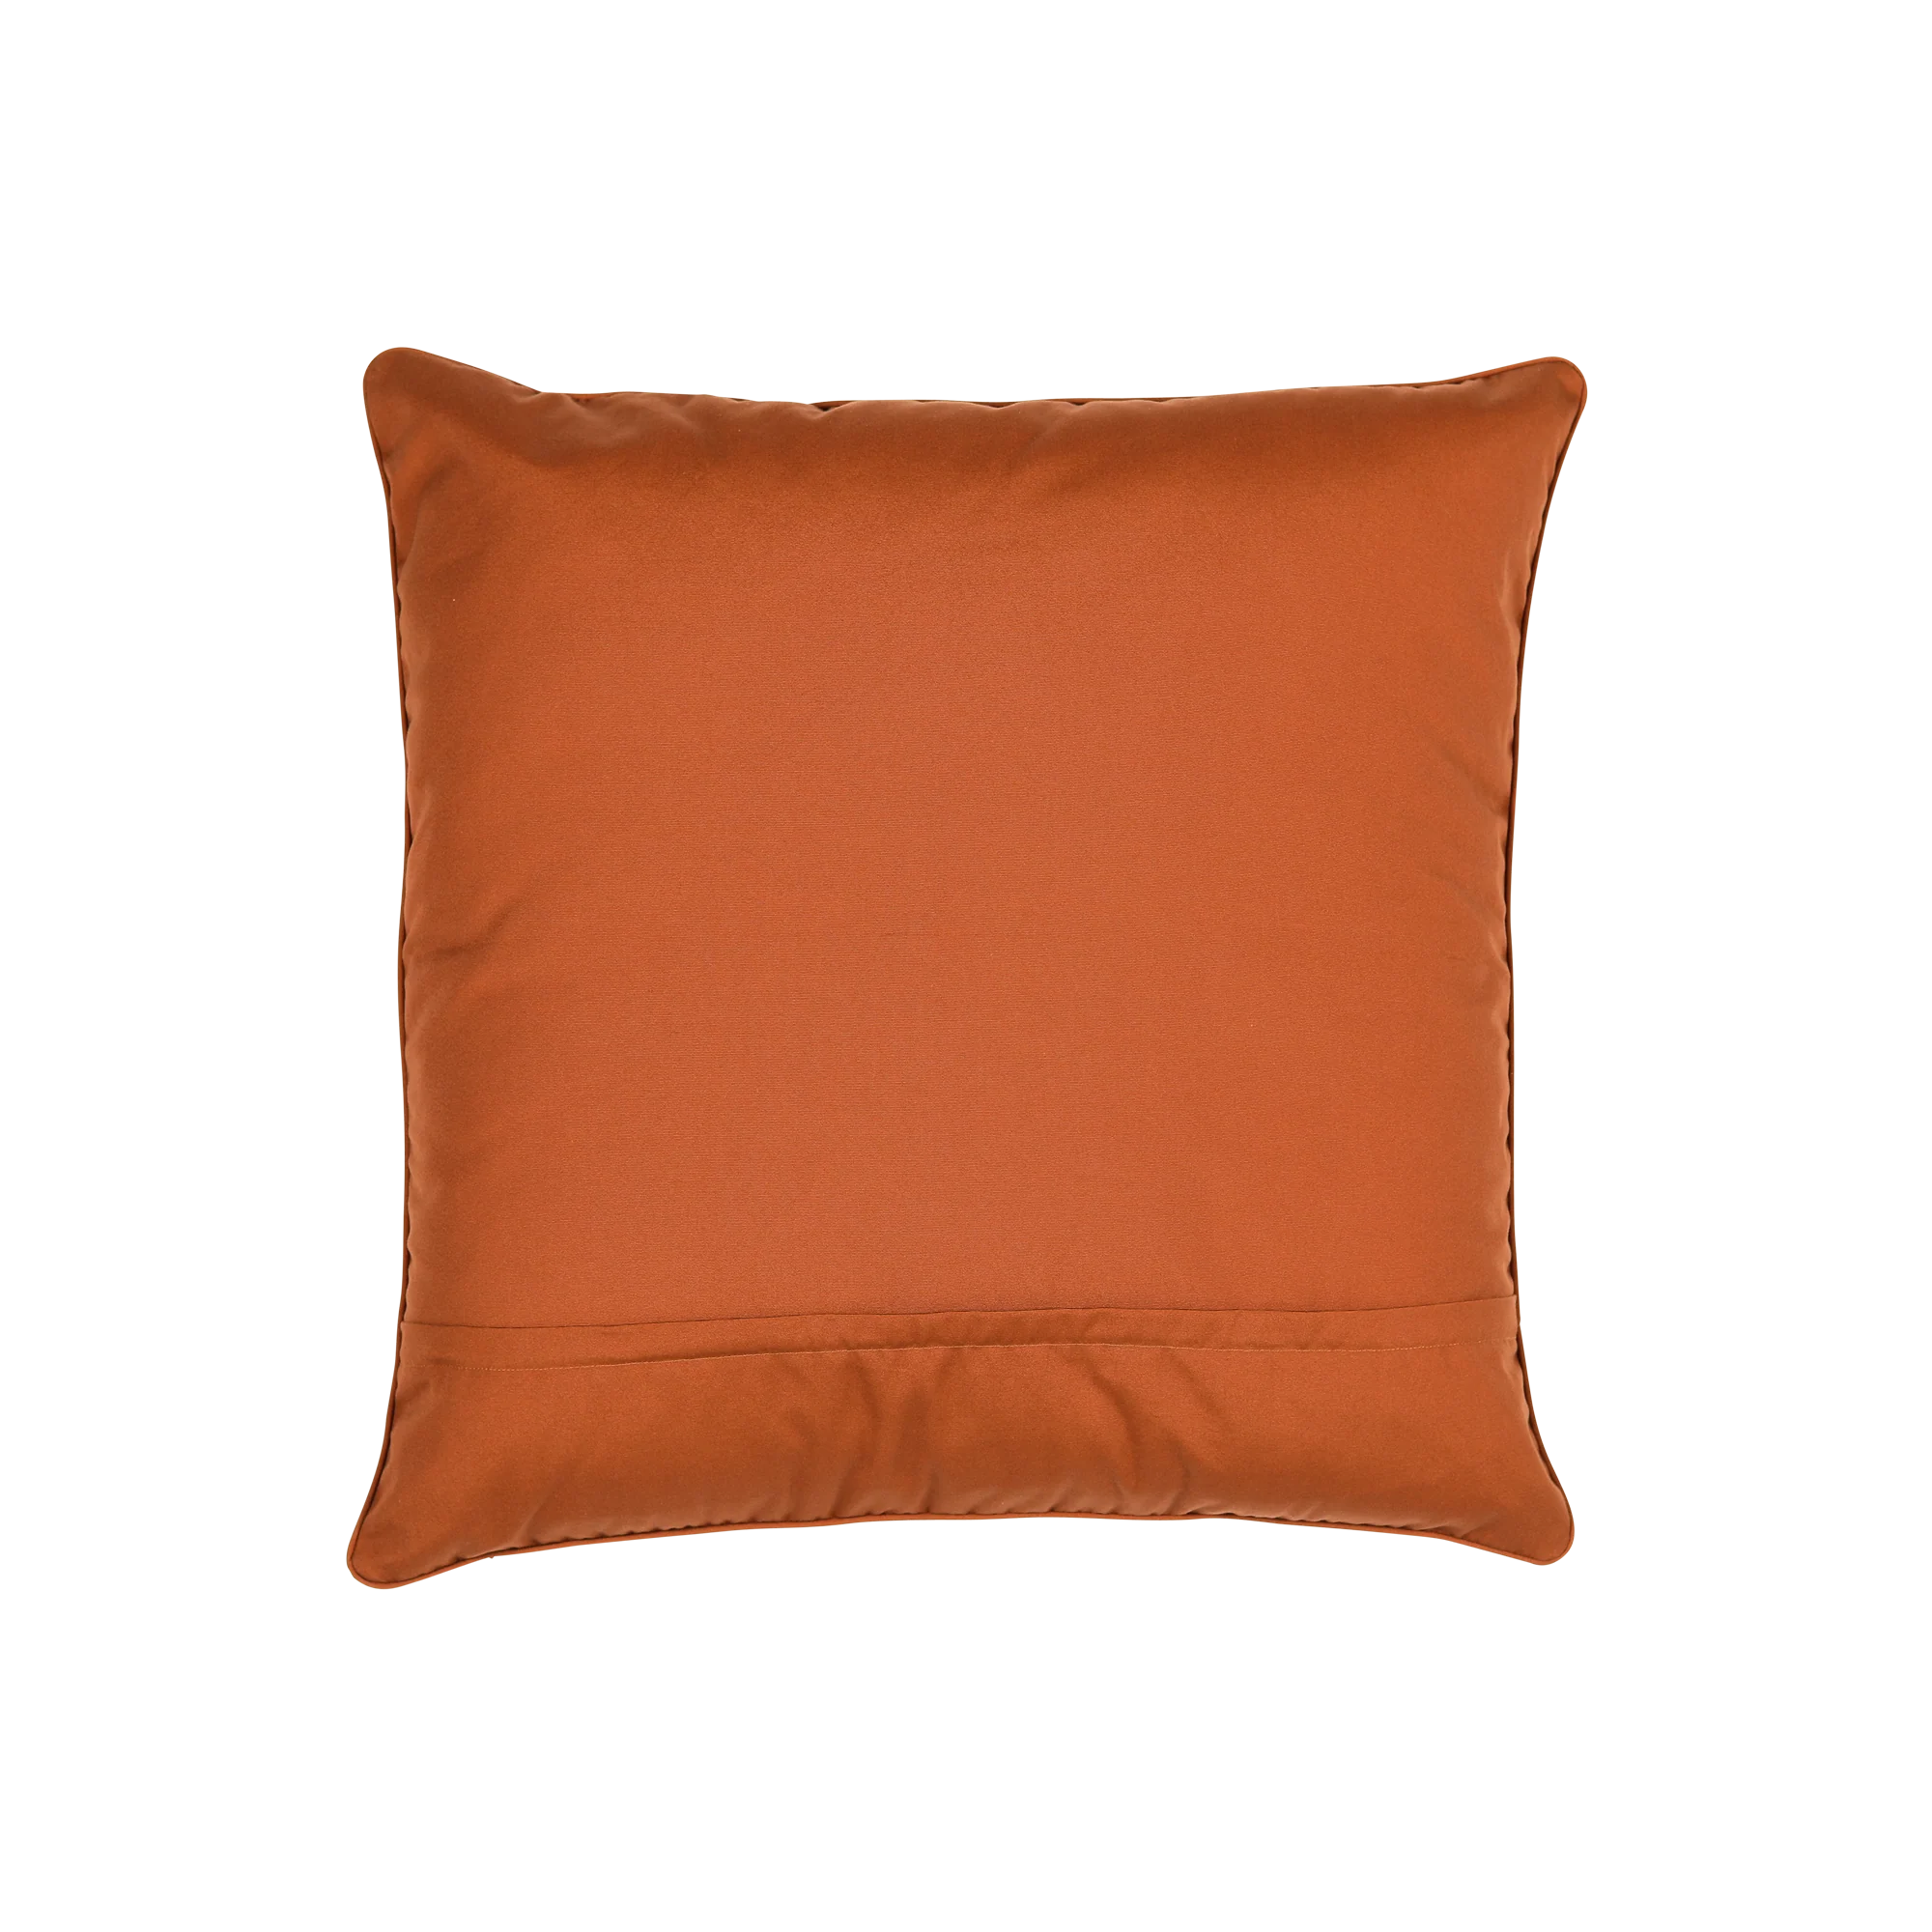 Wild Peach Cushion Cover - Large